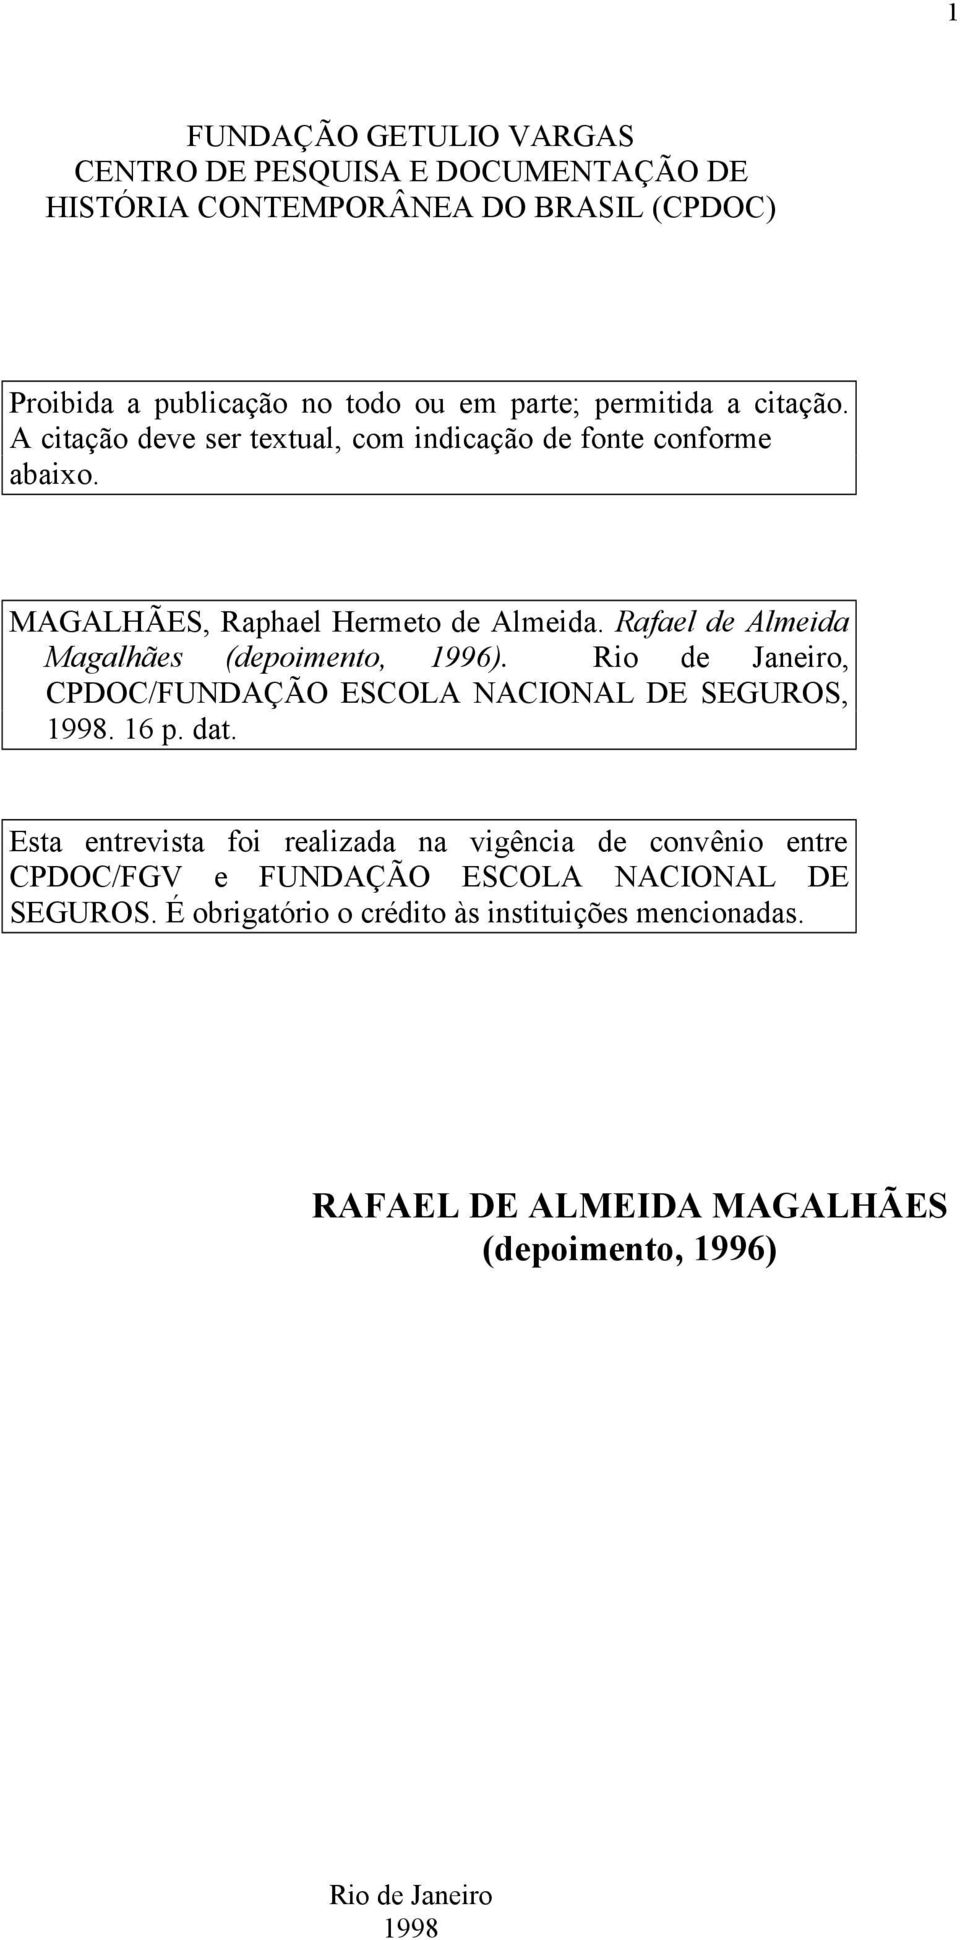 Rafael de Almeida Magalhães (depoimento, 1996). Rio de Janeiro, CPDOC/FUNDAÇÃO ESCOLA NACIONAL DE SEGUROS, 1998. 16 p. dat.